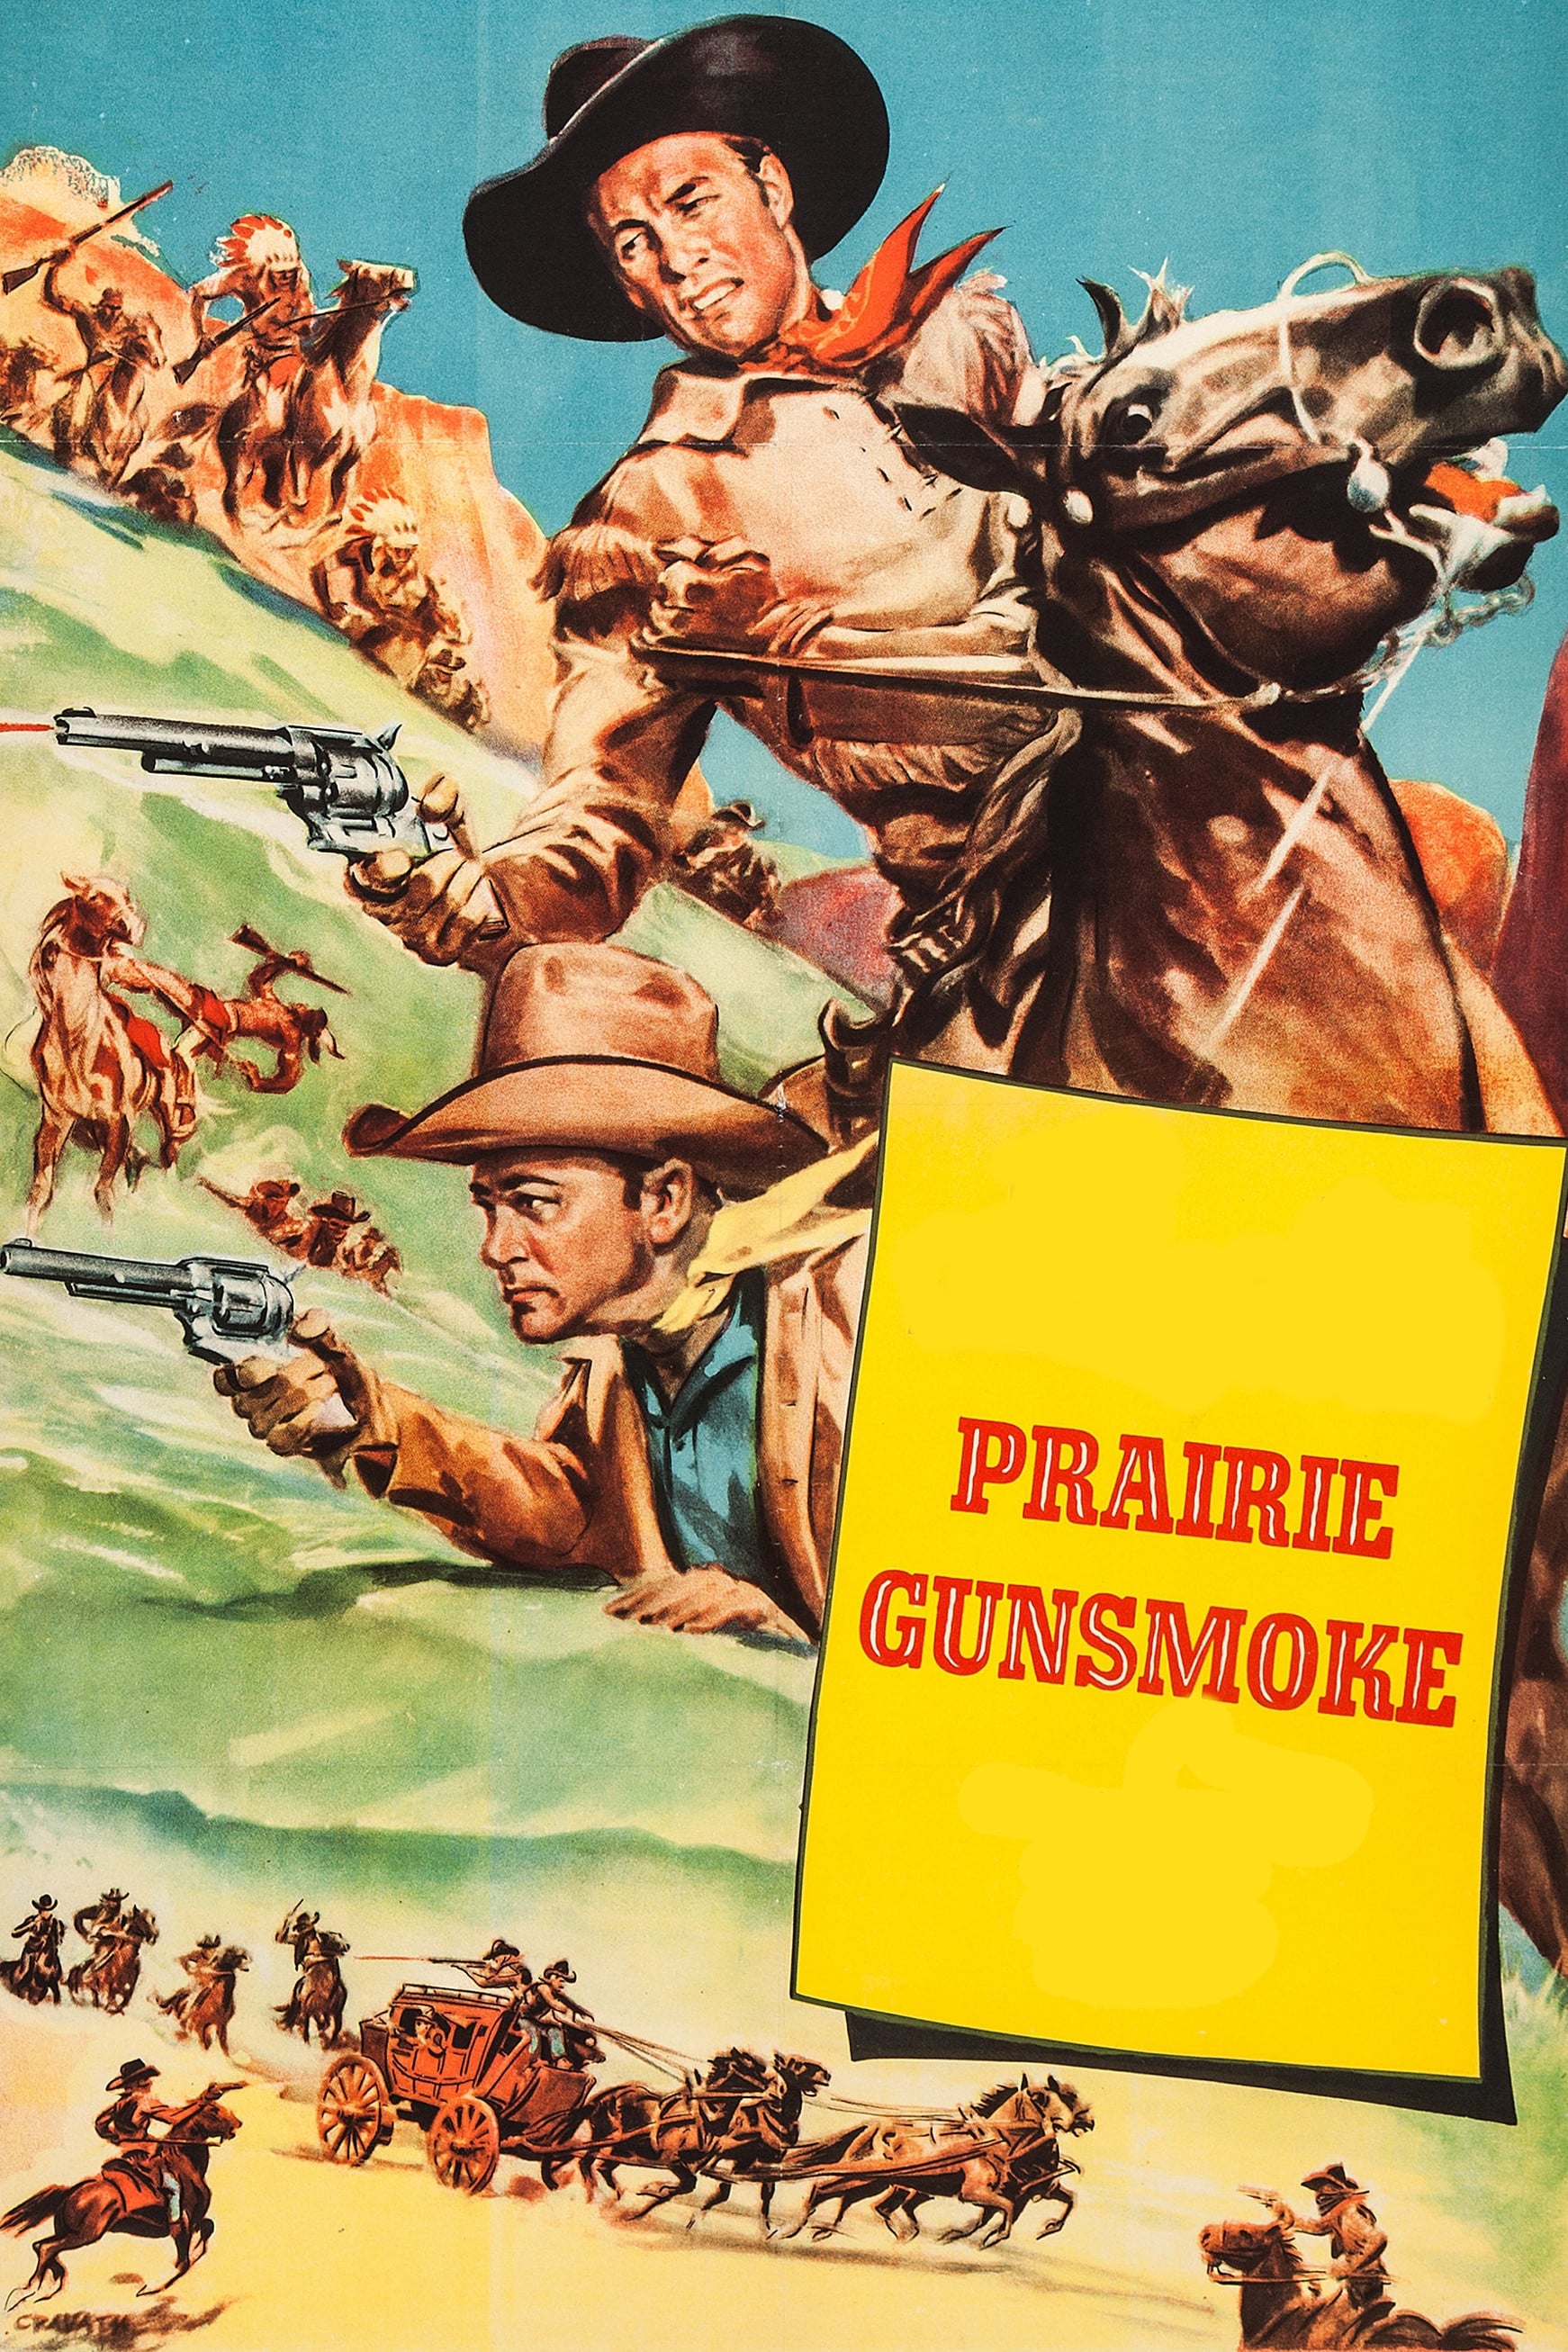 Prairie Gunsmoke